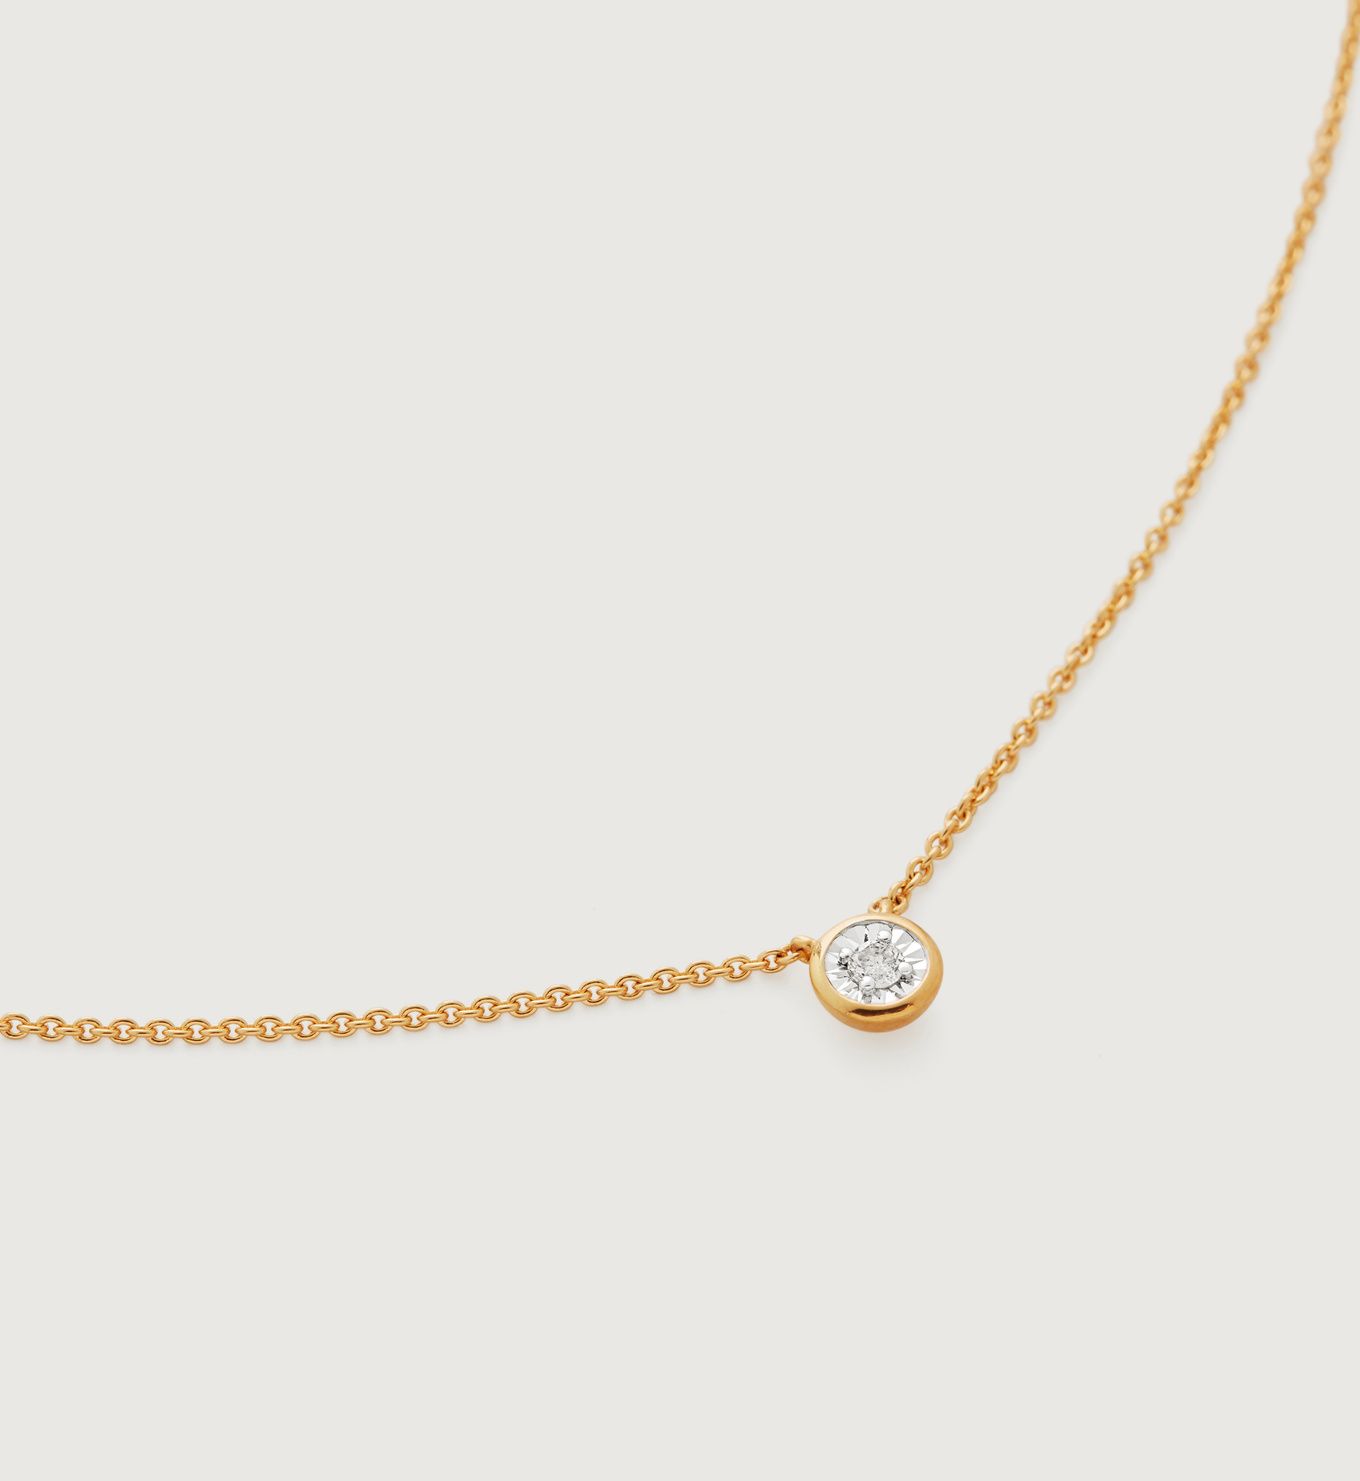 Diamond Essential Necklace Adjustable 41-46cm/16-18' | Monica Vinader (Global)